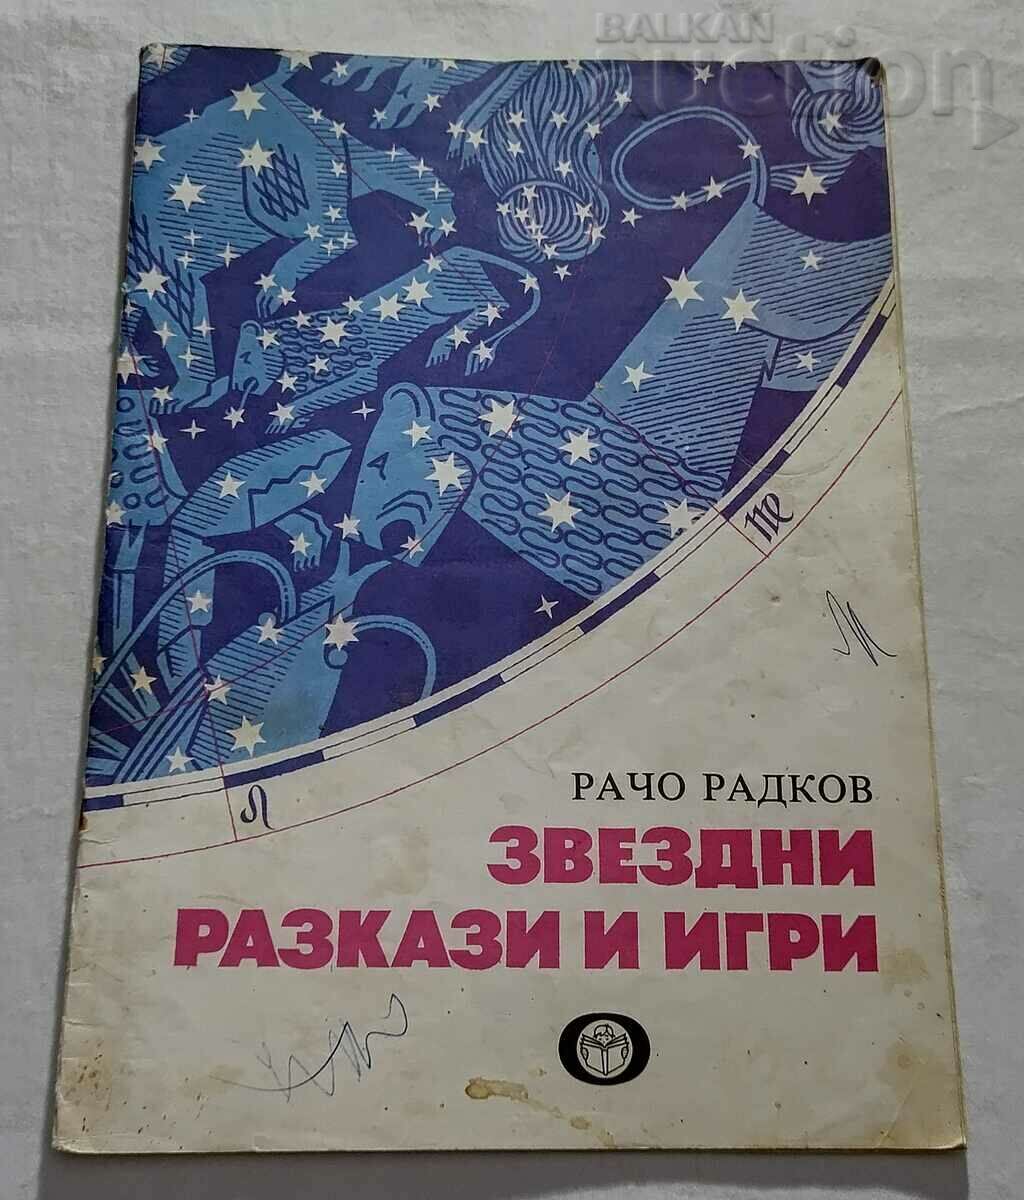 ΑΣΤΕΡΙΑ ΙΣΤΟΡΙΕΣ ΚΑΙ ΠΑΙΧΝΙΔΙΑ RACHO RADKOV 1985